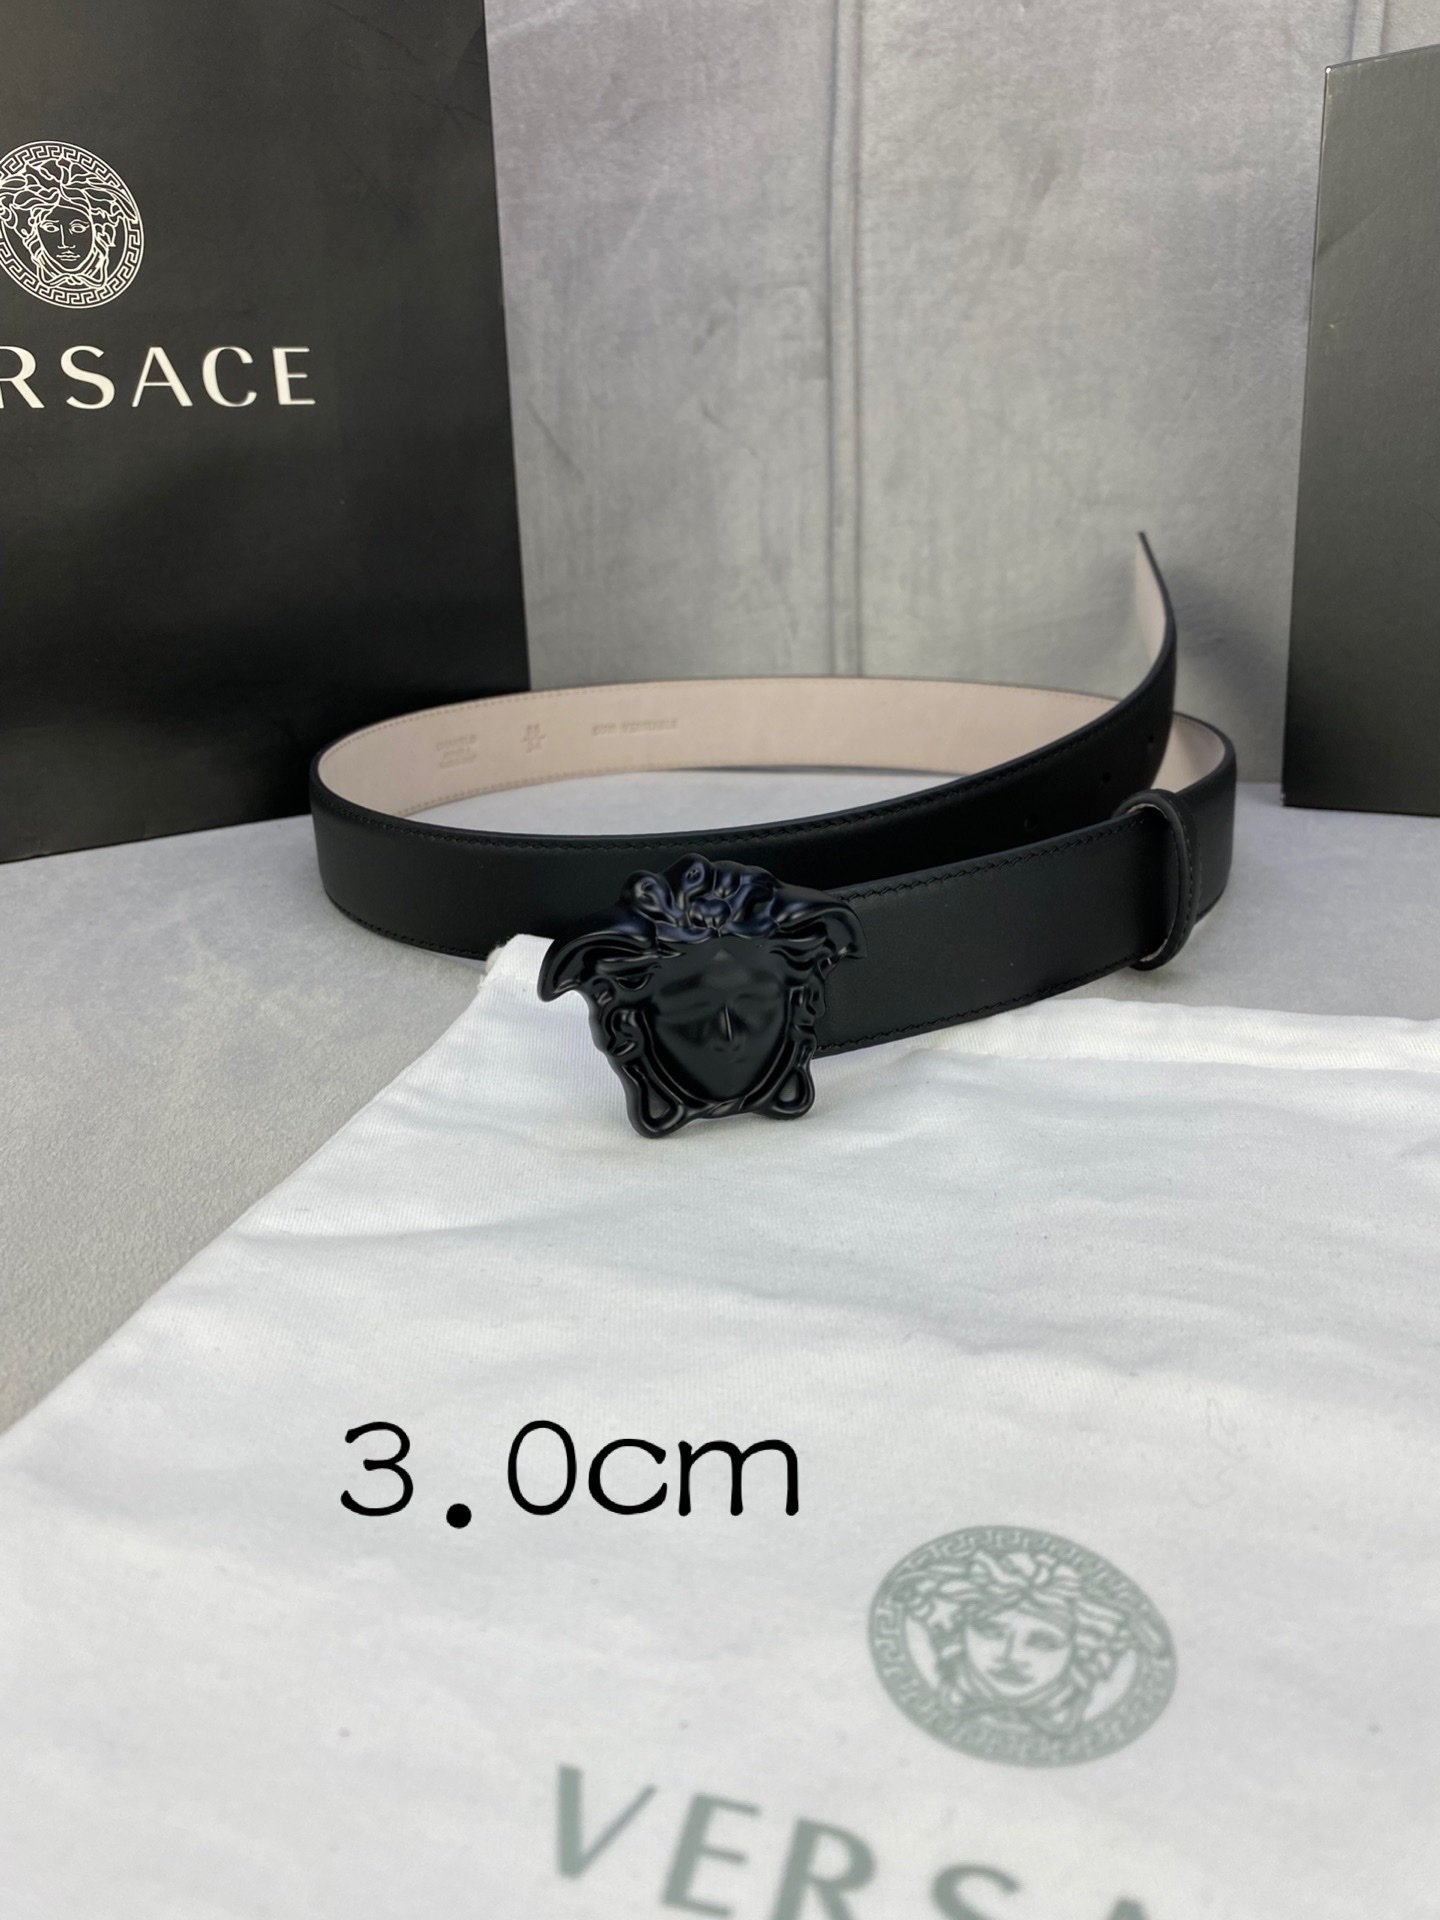 宽度3.0cm范思哲此腰带饰有标志性的Versace美杜莎头像扣彰显品牌格调是一款精美的衣橱必备单品秀场